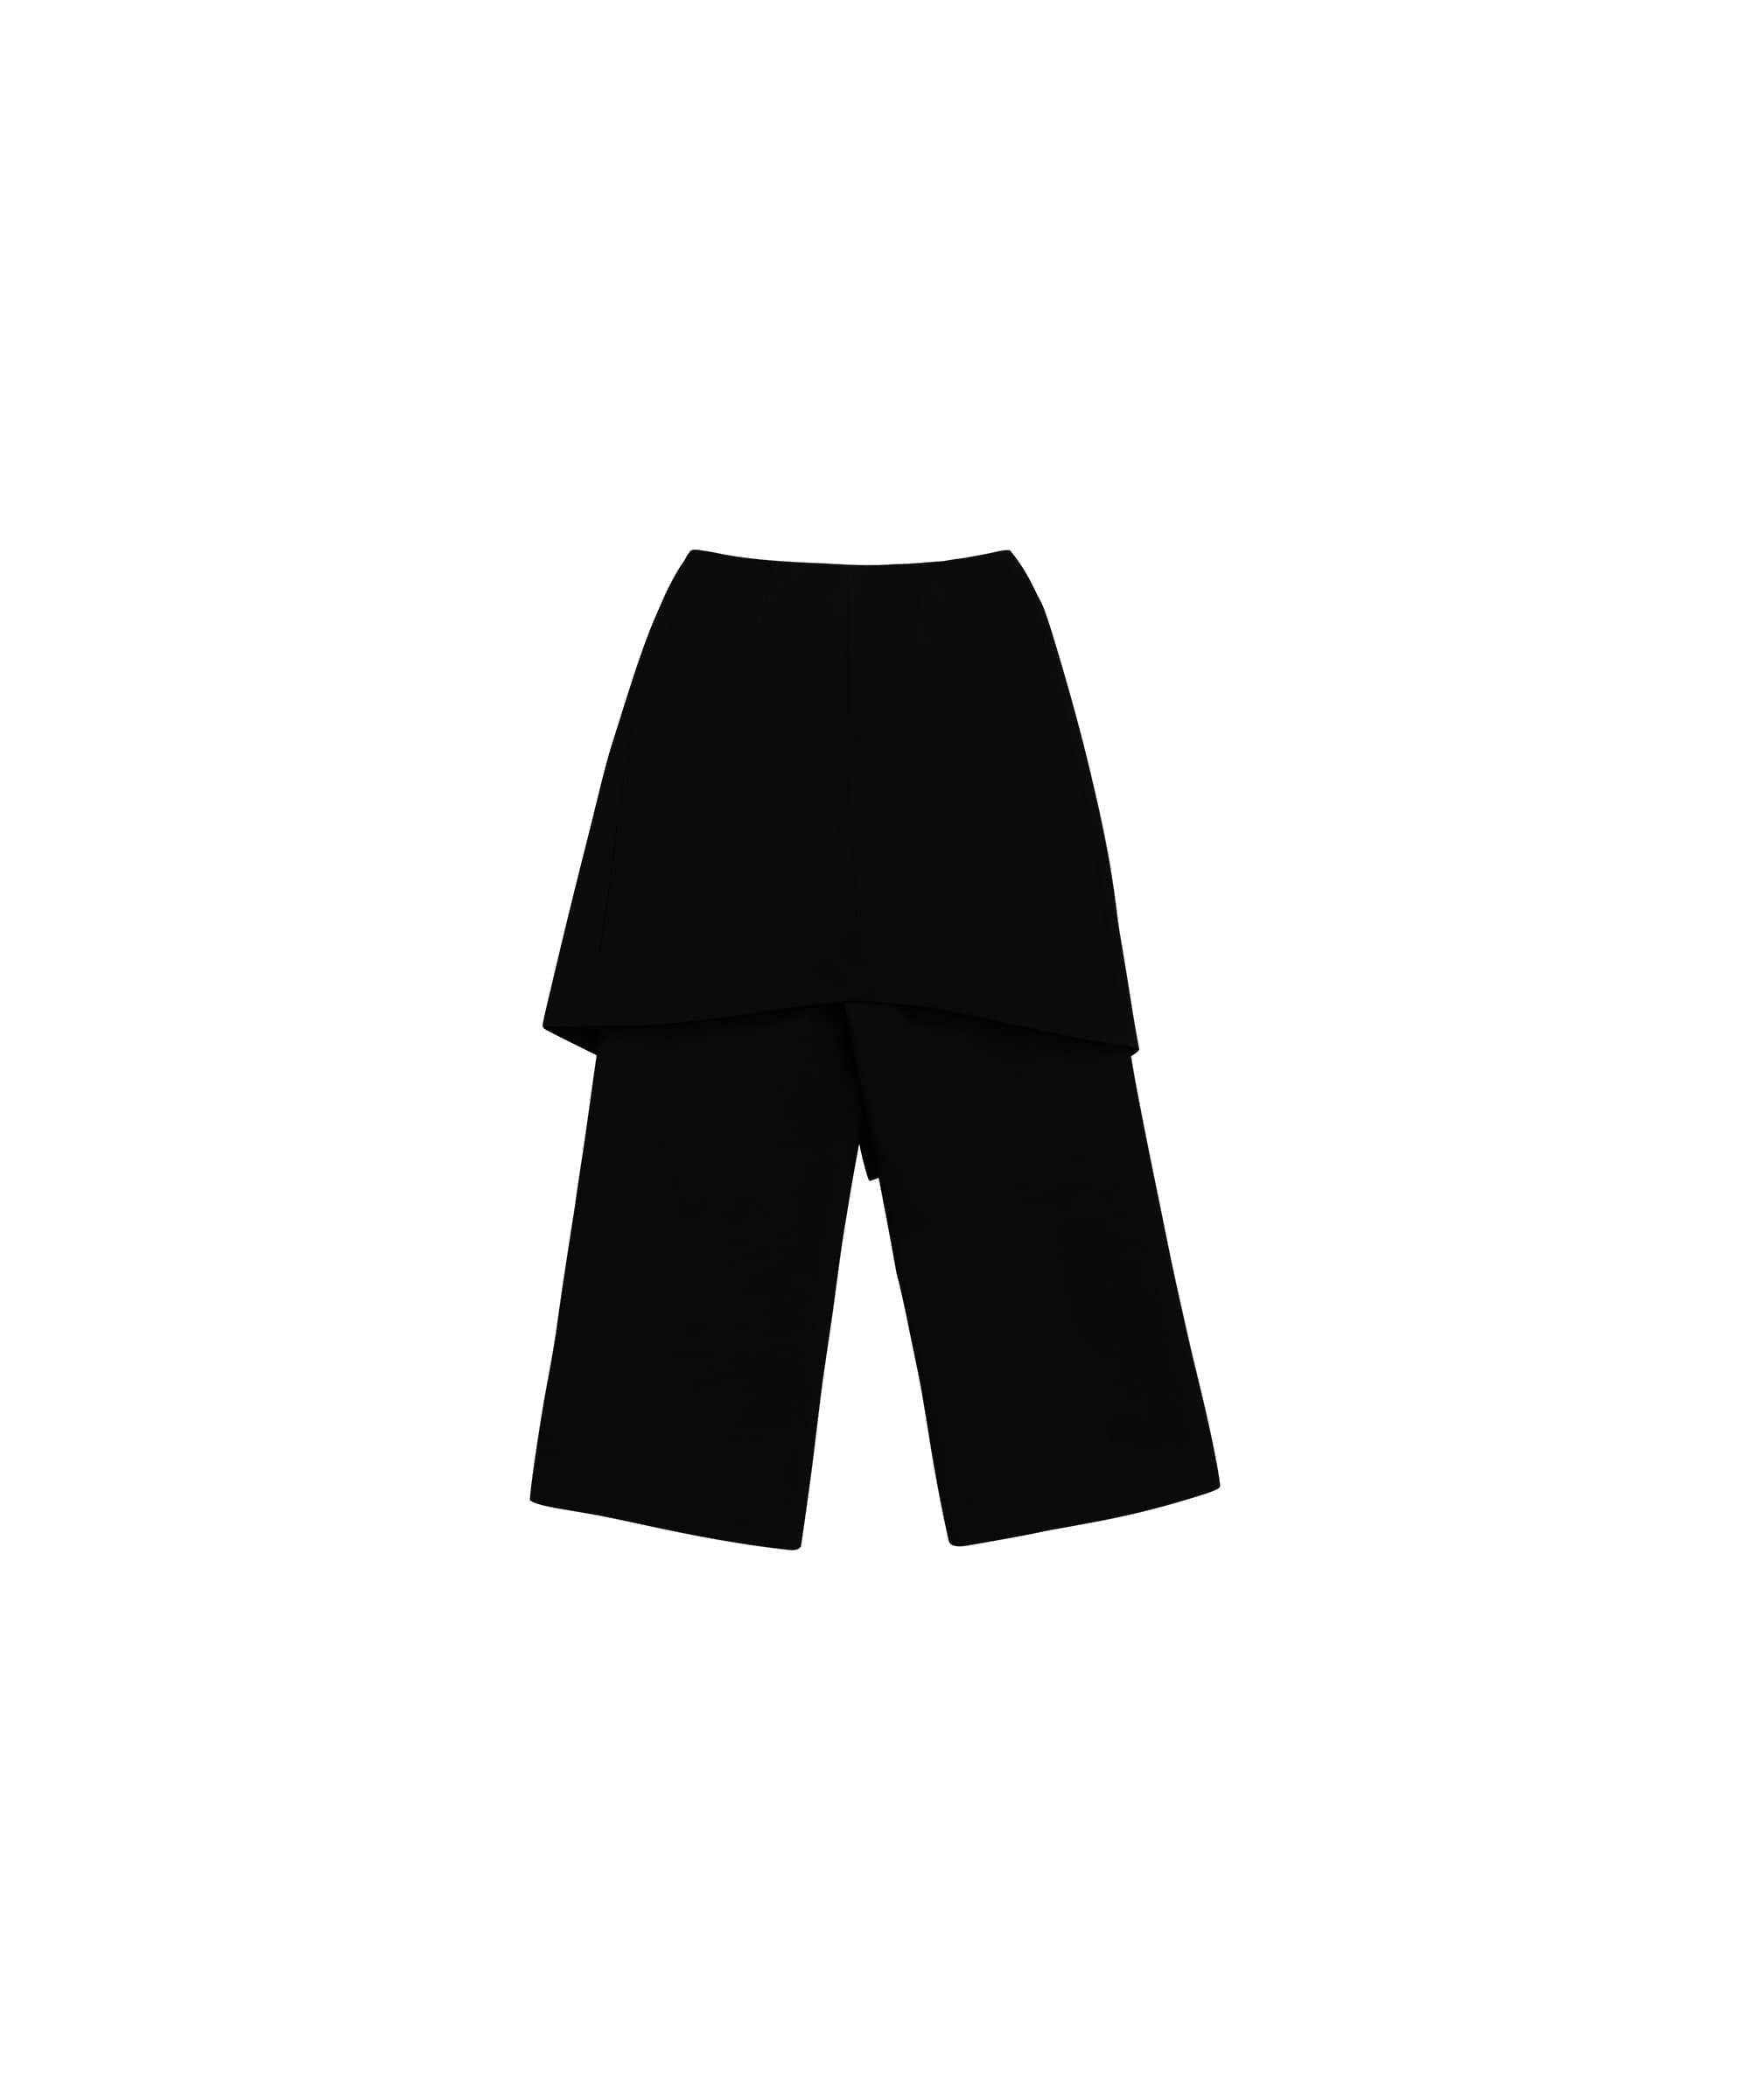 트리밍버드(TREEMINGBIRD) 2-way Folded Wrap Skirt-pants [ Black